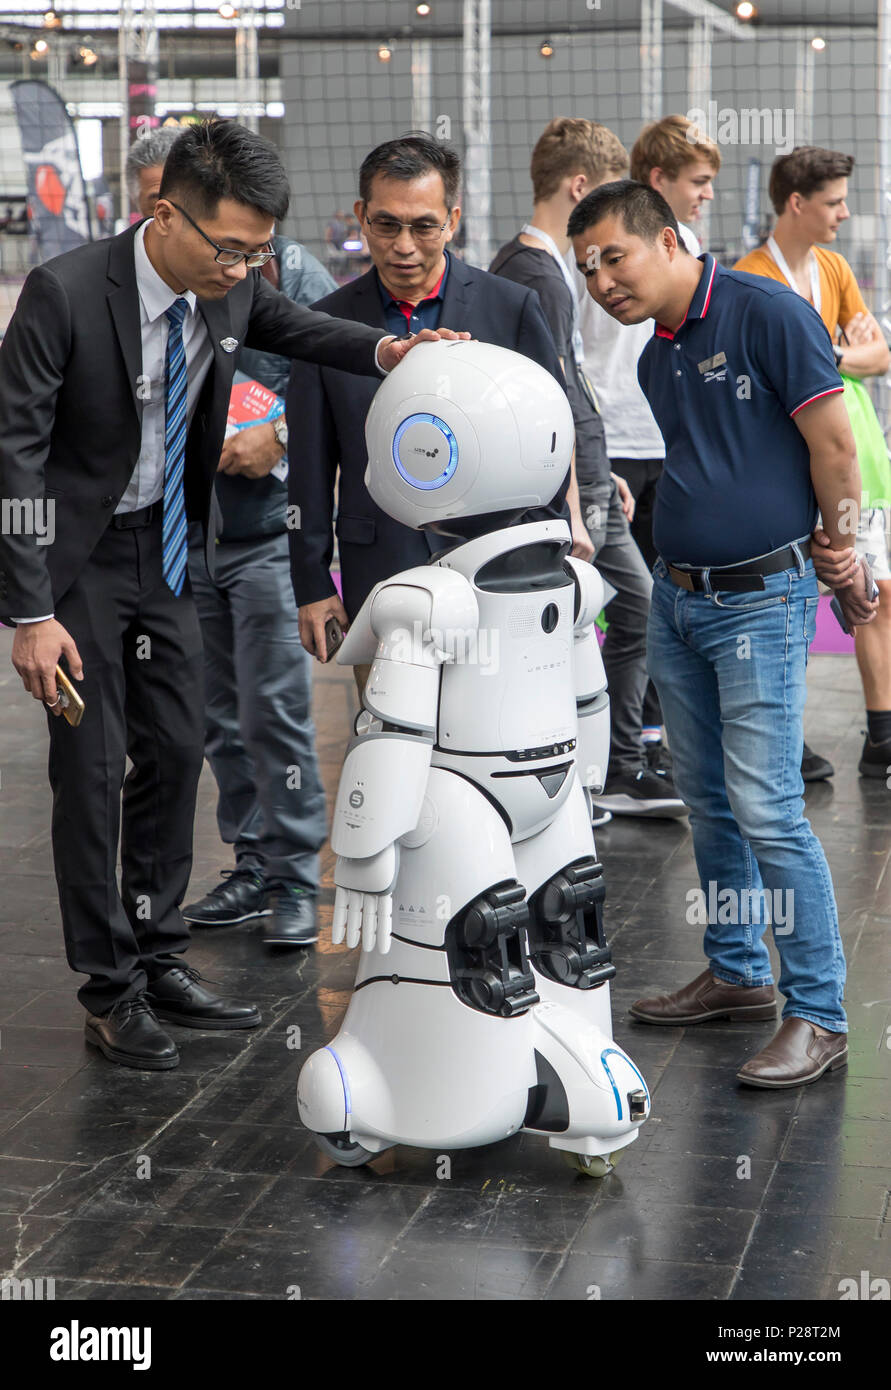 CEBIT 2018, der weltweit größten IT-Messe, Hannover, Roboter als Dienstleister, in Geschäften, Hotels, Krankenhäuser, Service, bietet Information, signp Stockfoto